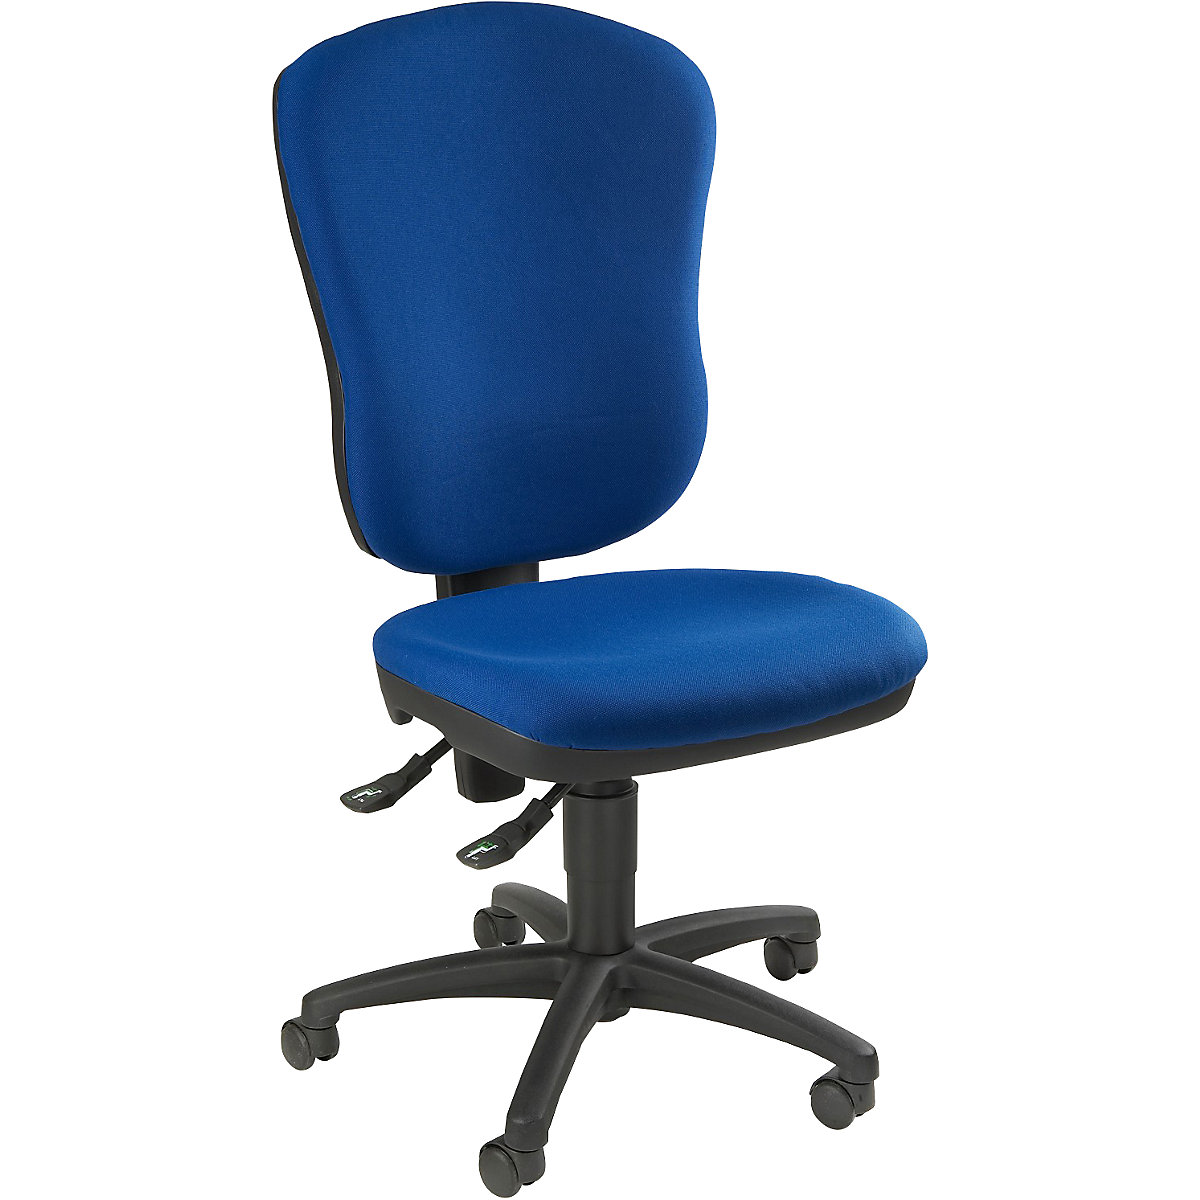 Standardní otočná židle – Topstar, bez područek, s opěrou bederních obratlů, výška opěradla 570 mm, potah modrý royal, od 3 ks-1